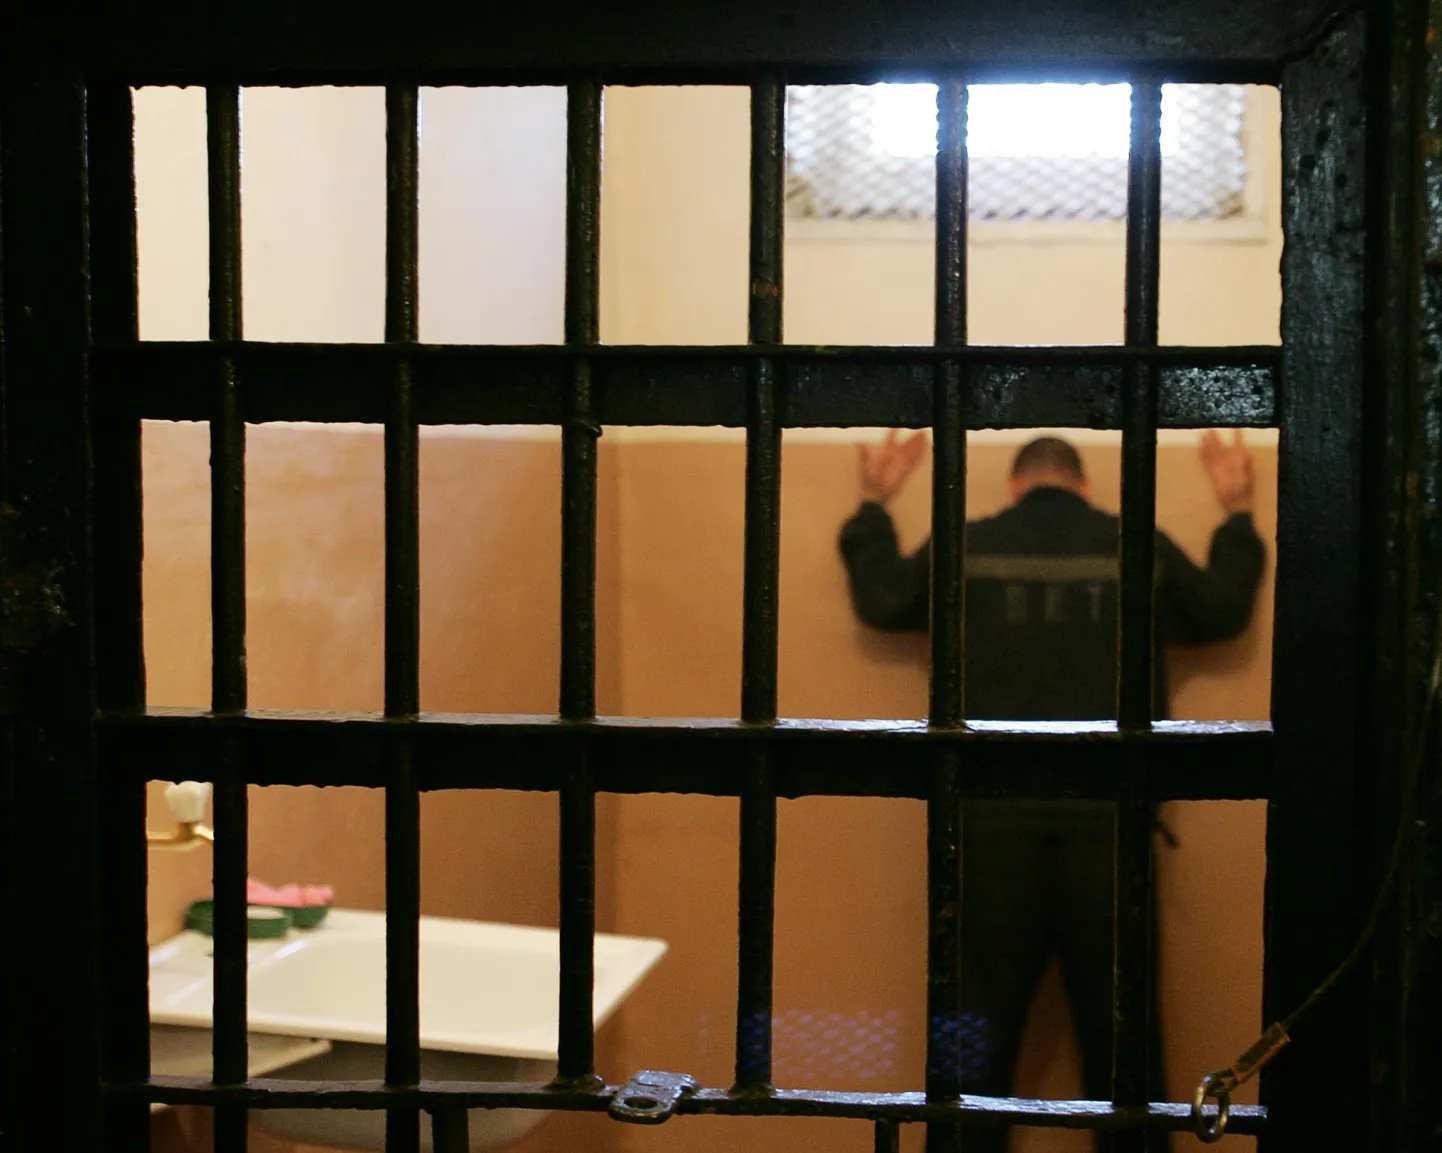 Kinnipeetav Mordoovia karistuskoloonias Volga föderaalringkonnas. Euroopa Inimõiguste Kohtu andmetel leiab pool kõigist piinamistest ja inimsusevastastest kuritegudest aset Venemaal, kus neid aga piisavalt ei uurita.